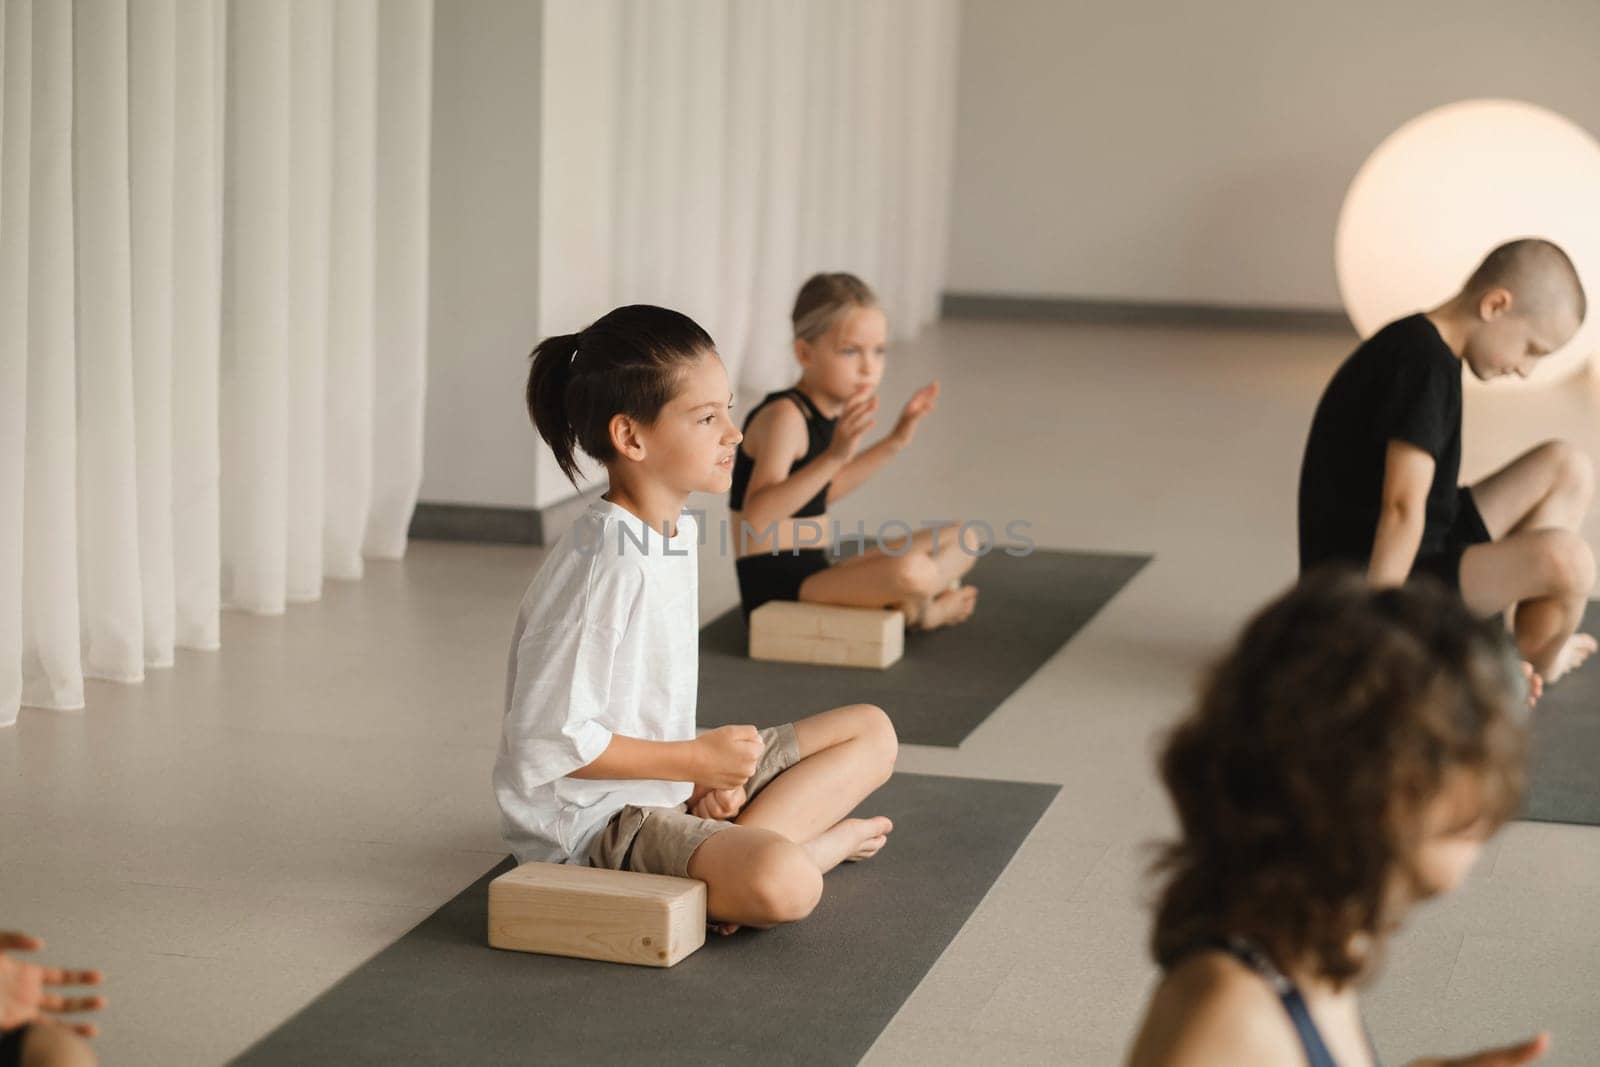 Children do yoga in the gym on support blocks. Children's gymnastics.